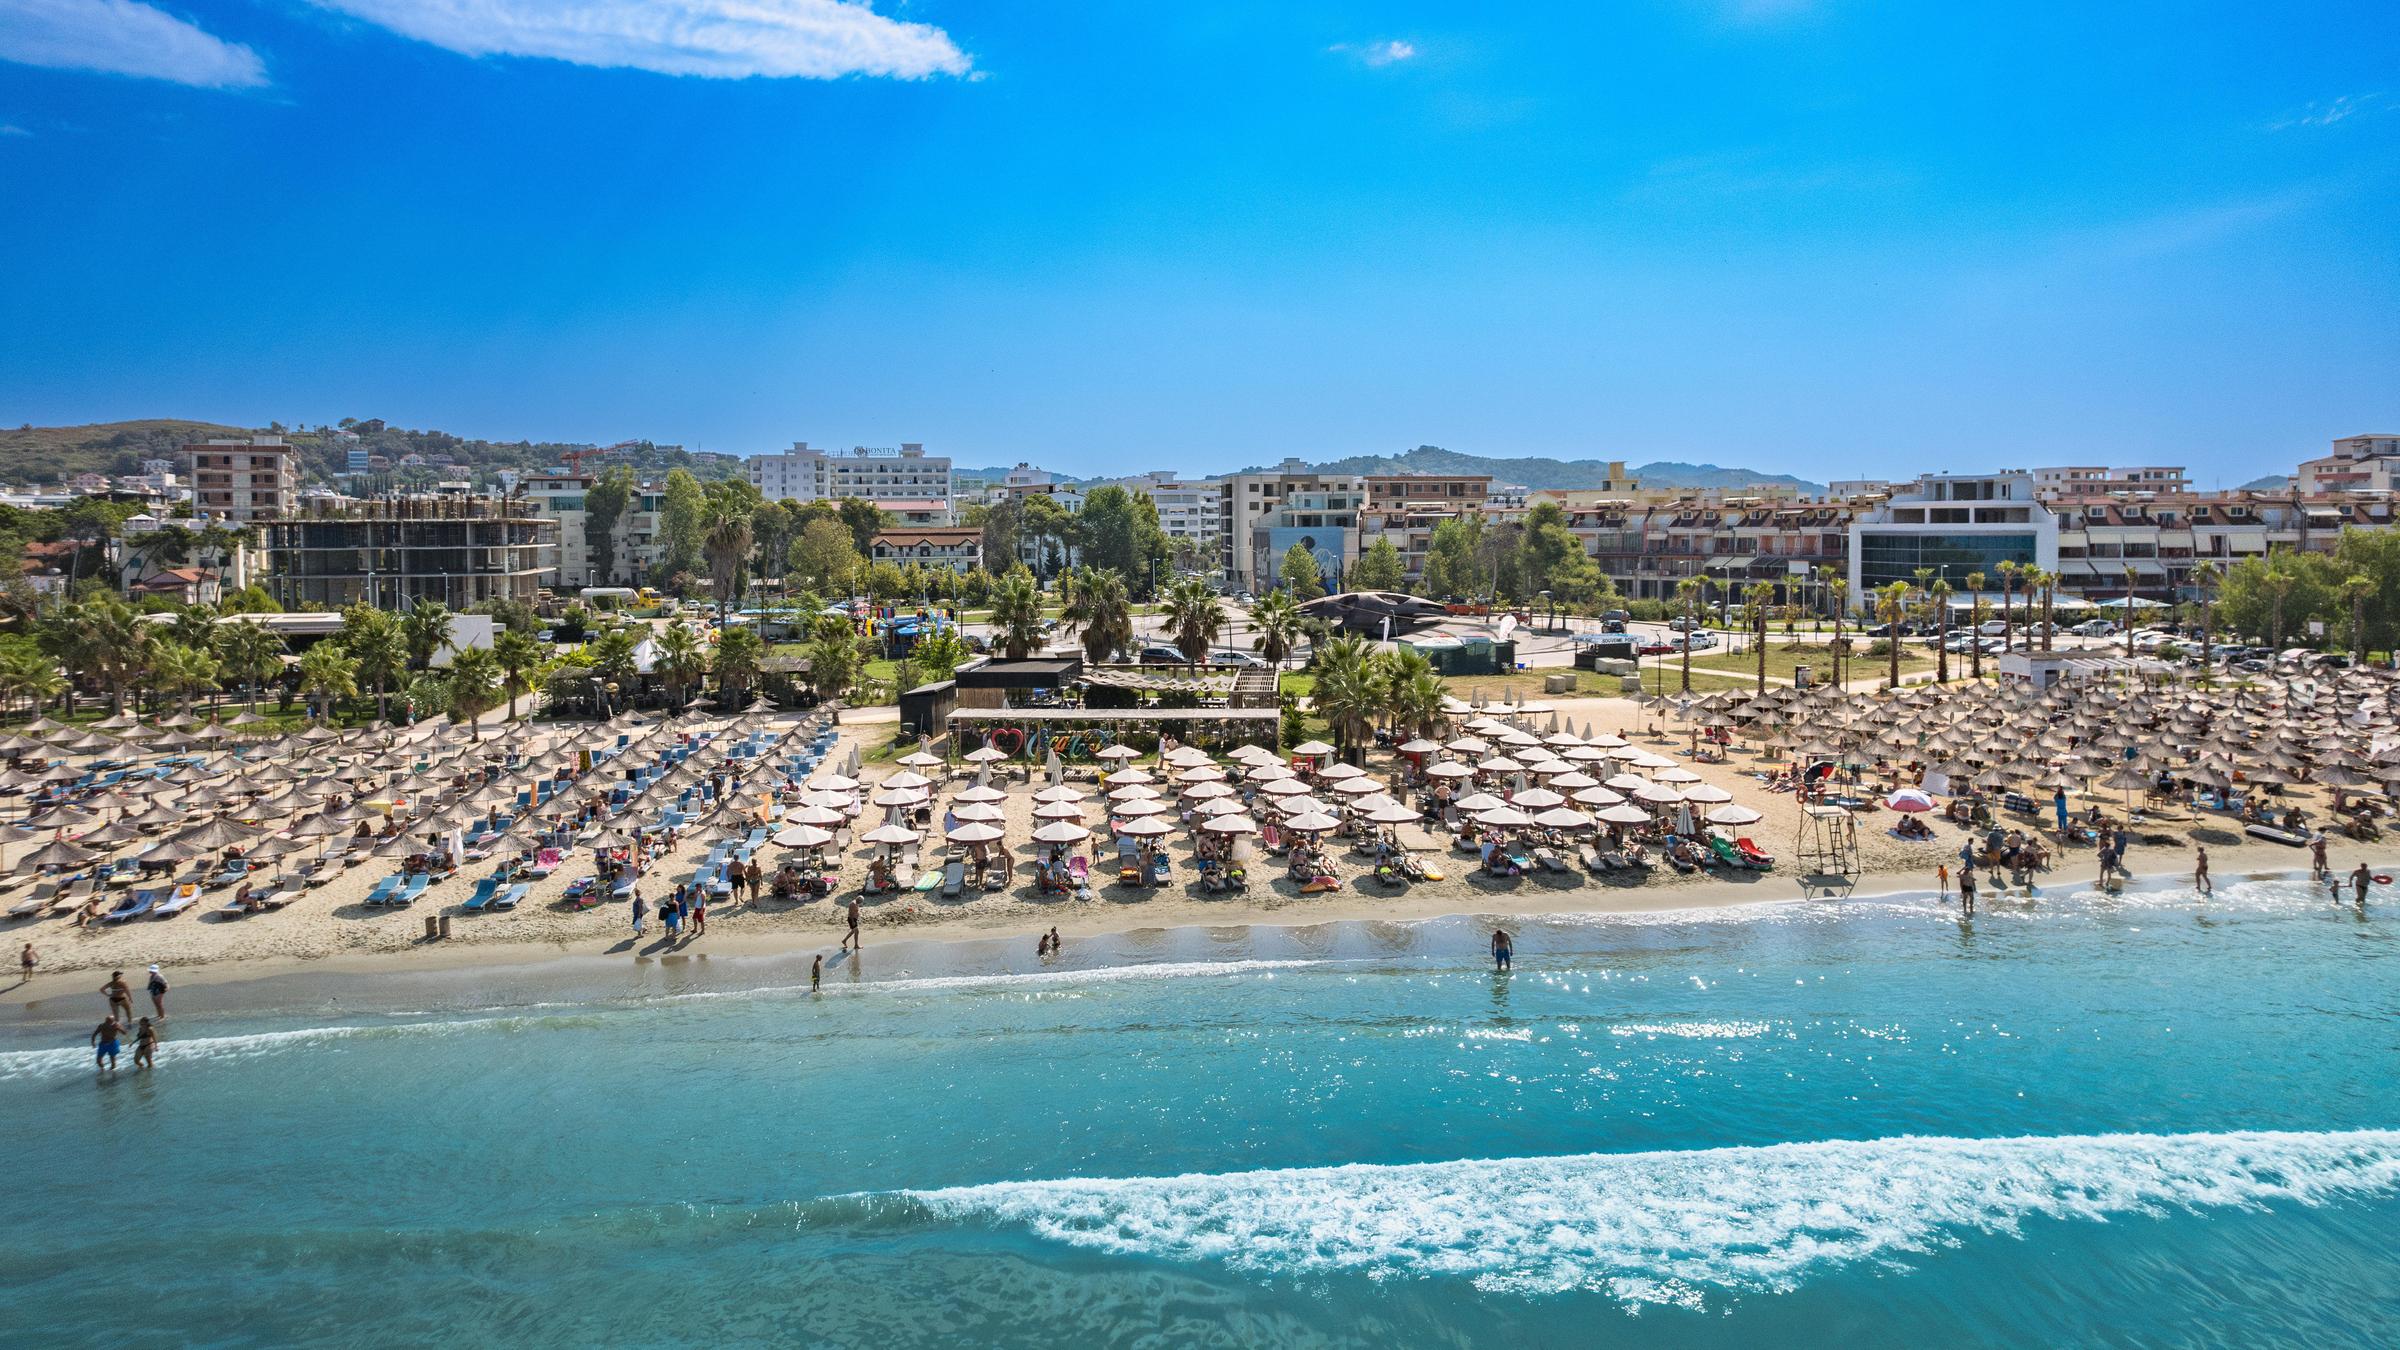 Blick auf einen Strand in Albanien, an dem tausende Sonnenschirme aufgespannt sind und zahlreich Touristen baden.